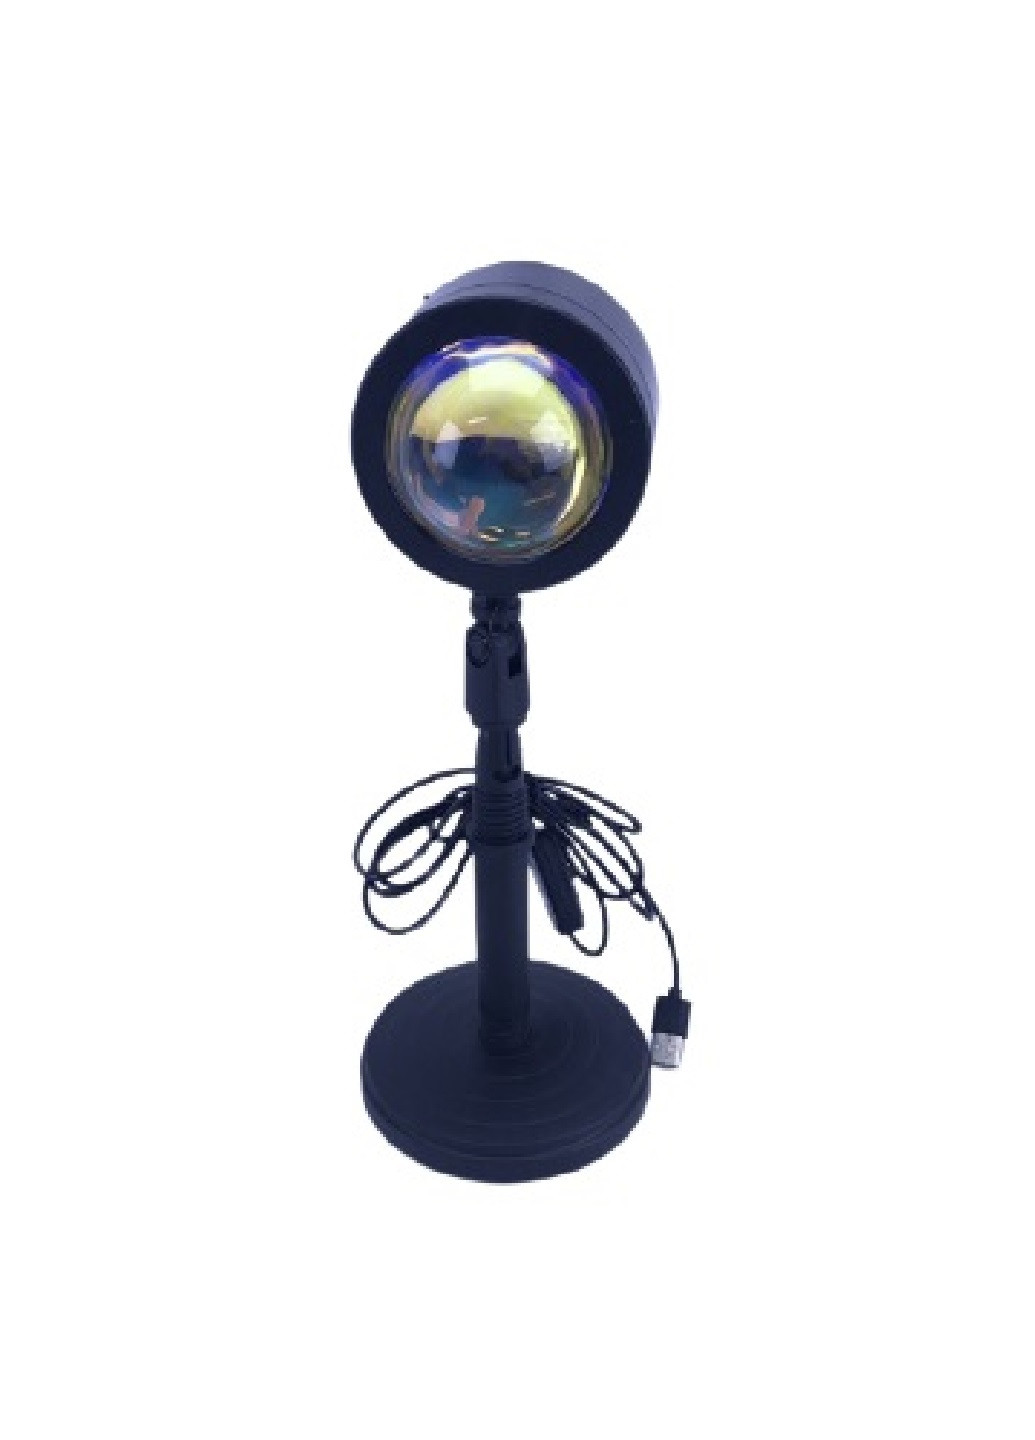 Проекционный цветной светильник проектор лампа LED ночник для селфи с эффектом заката и рассвета 4 режима (254558-Нов) Francesco Marconi (248297265)